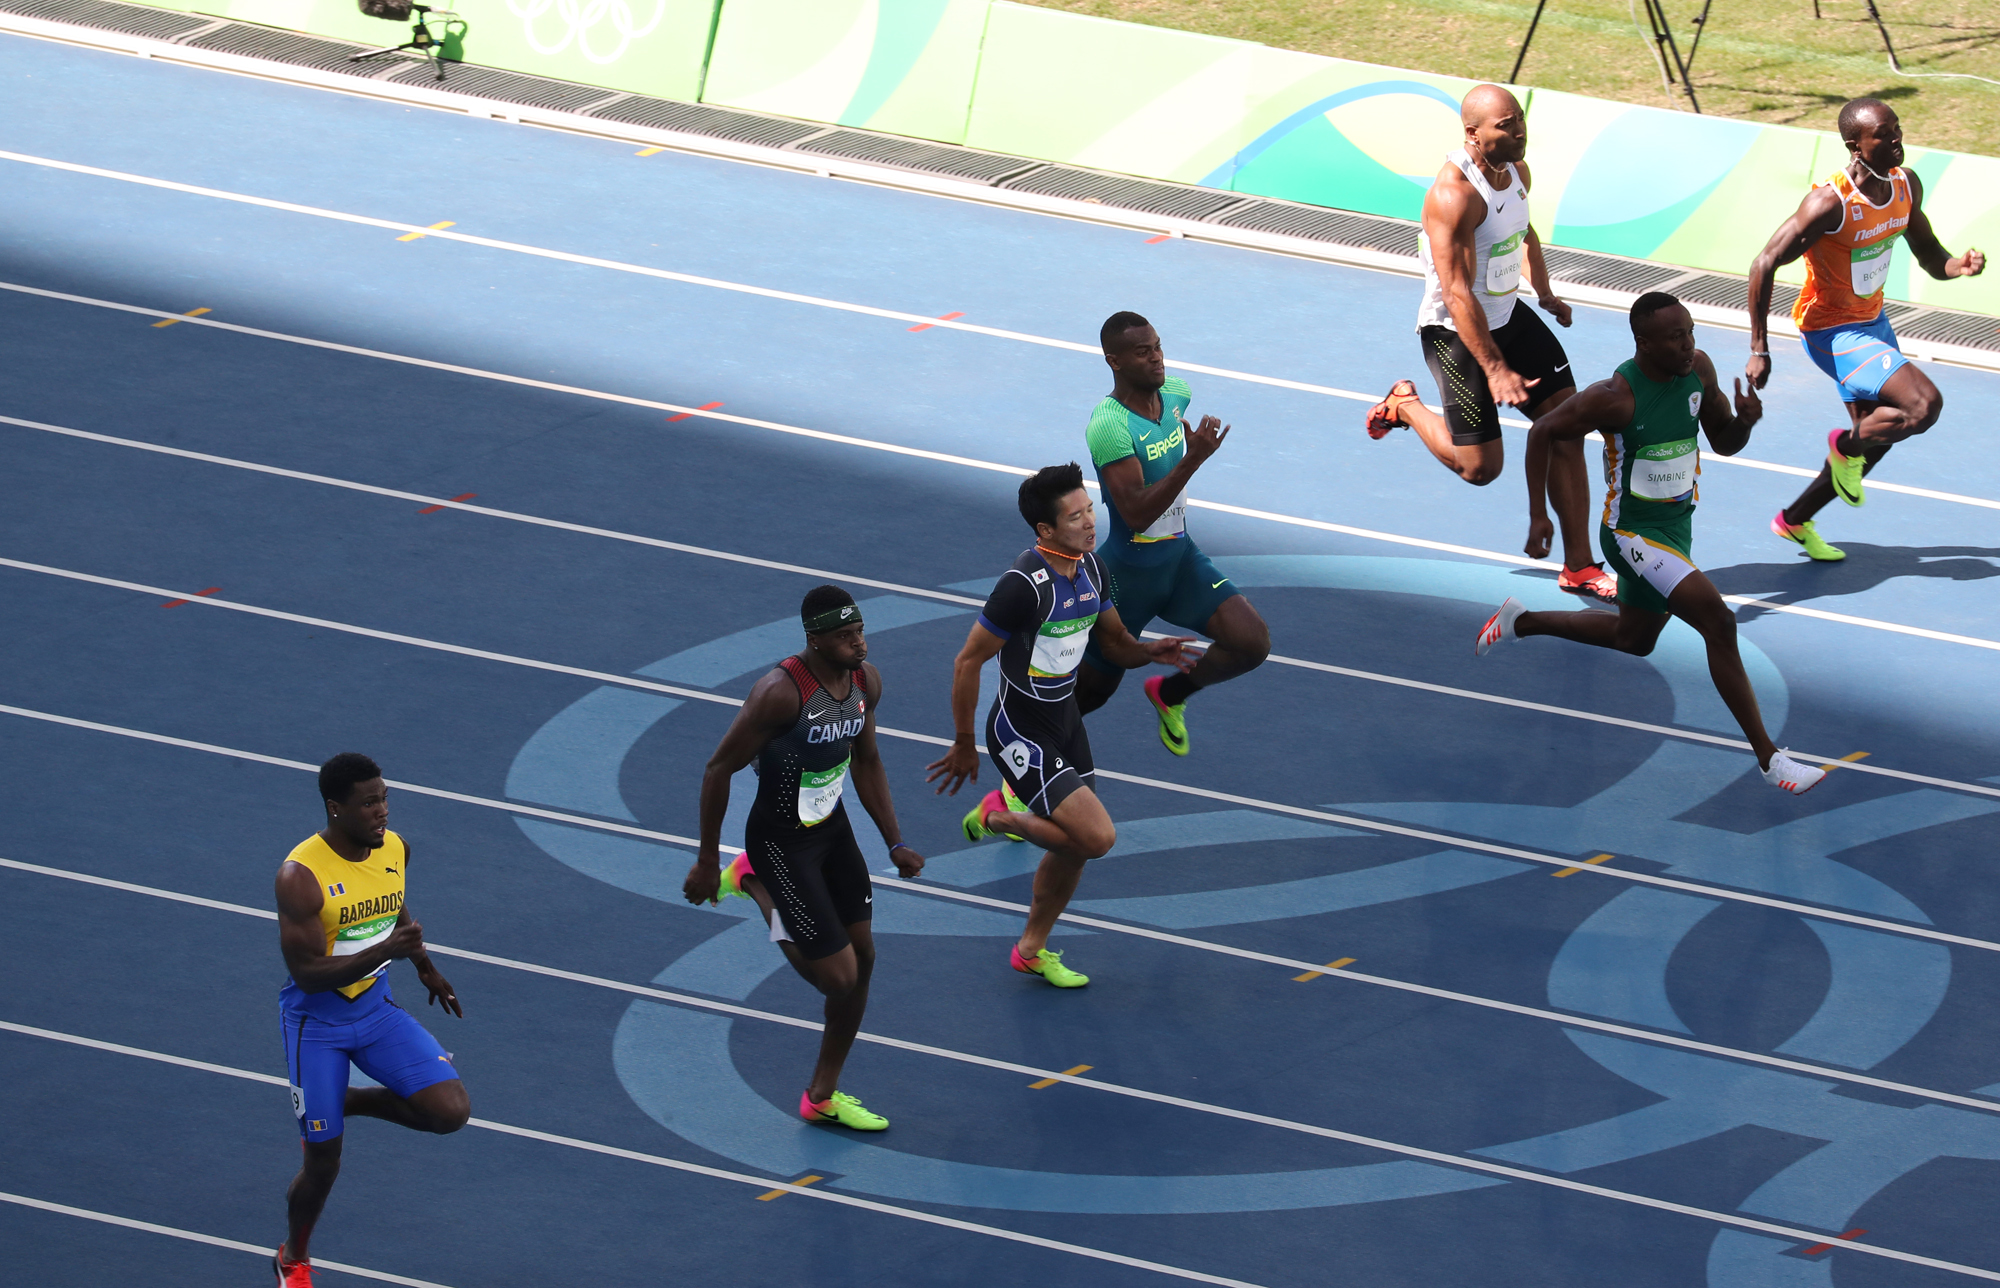  13일 오후(현지시간) 브라질 리우 마라카낭 올림픽 주경기장에서 열린 남자 100m 예선 8조 레이스에 참가한 김국영(왼쪽 셋째)이 전력질주 하고 있다. 김국영은 이날 10초37로 결승선을 통과, 예선탈락했다.
